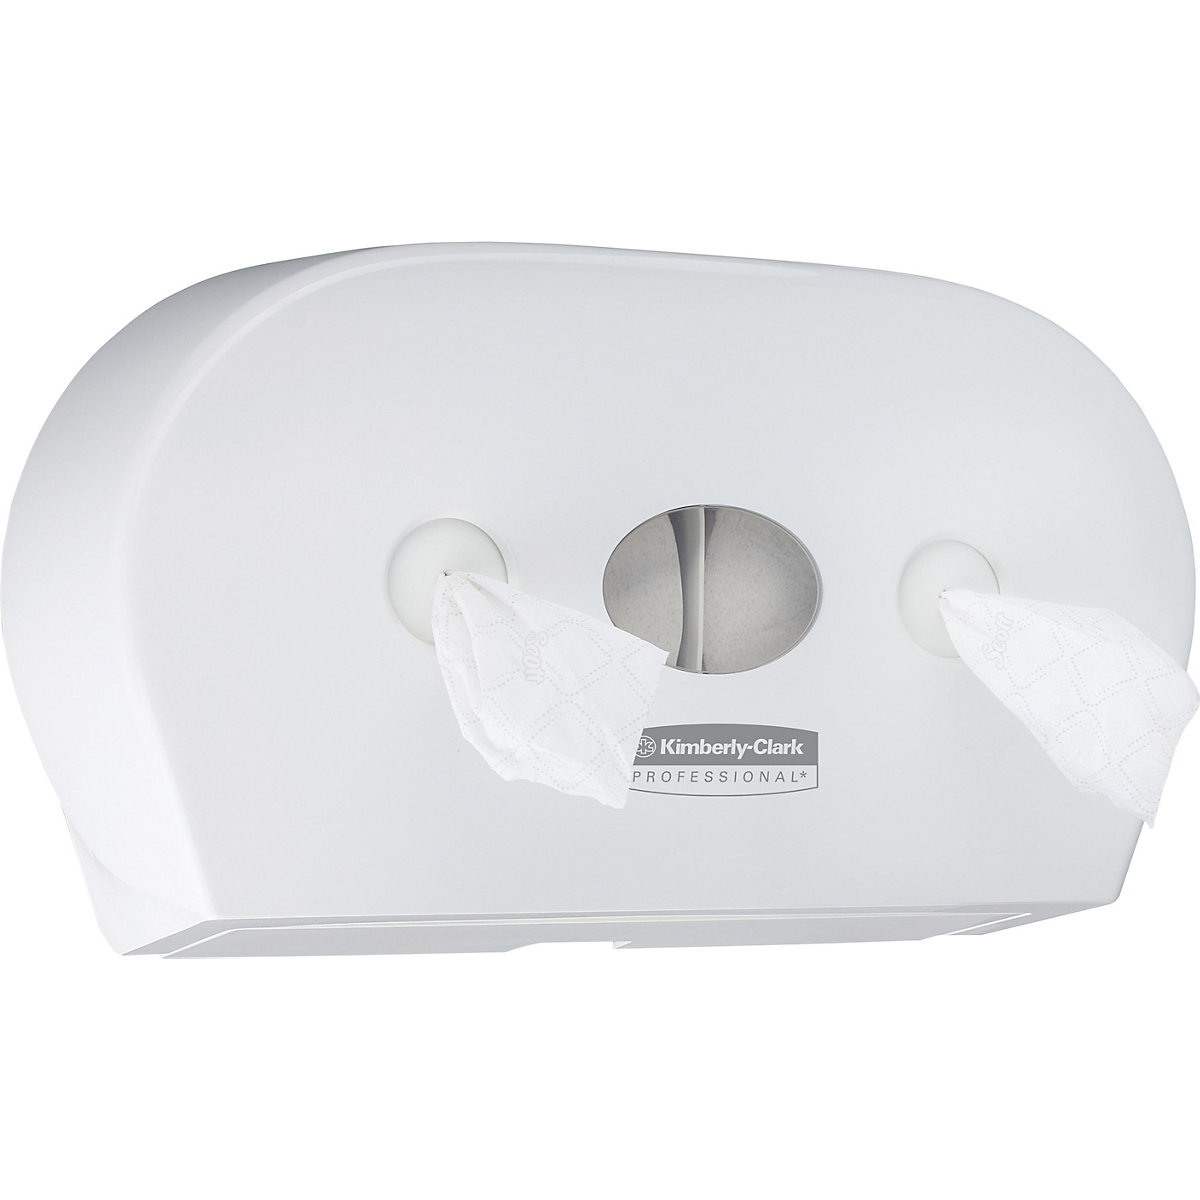 Minidispensador de papel higiénico 7186 Scott® Control™ – Kimberly-Clark